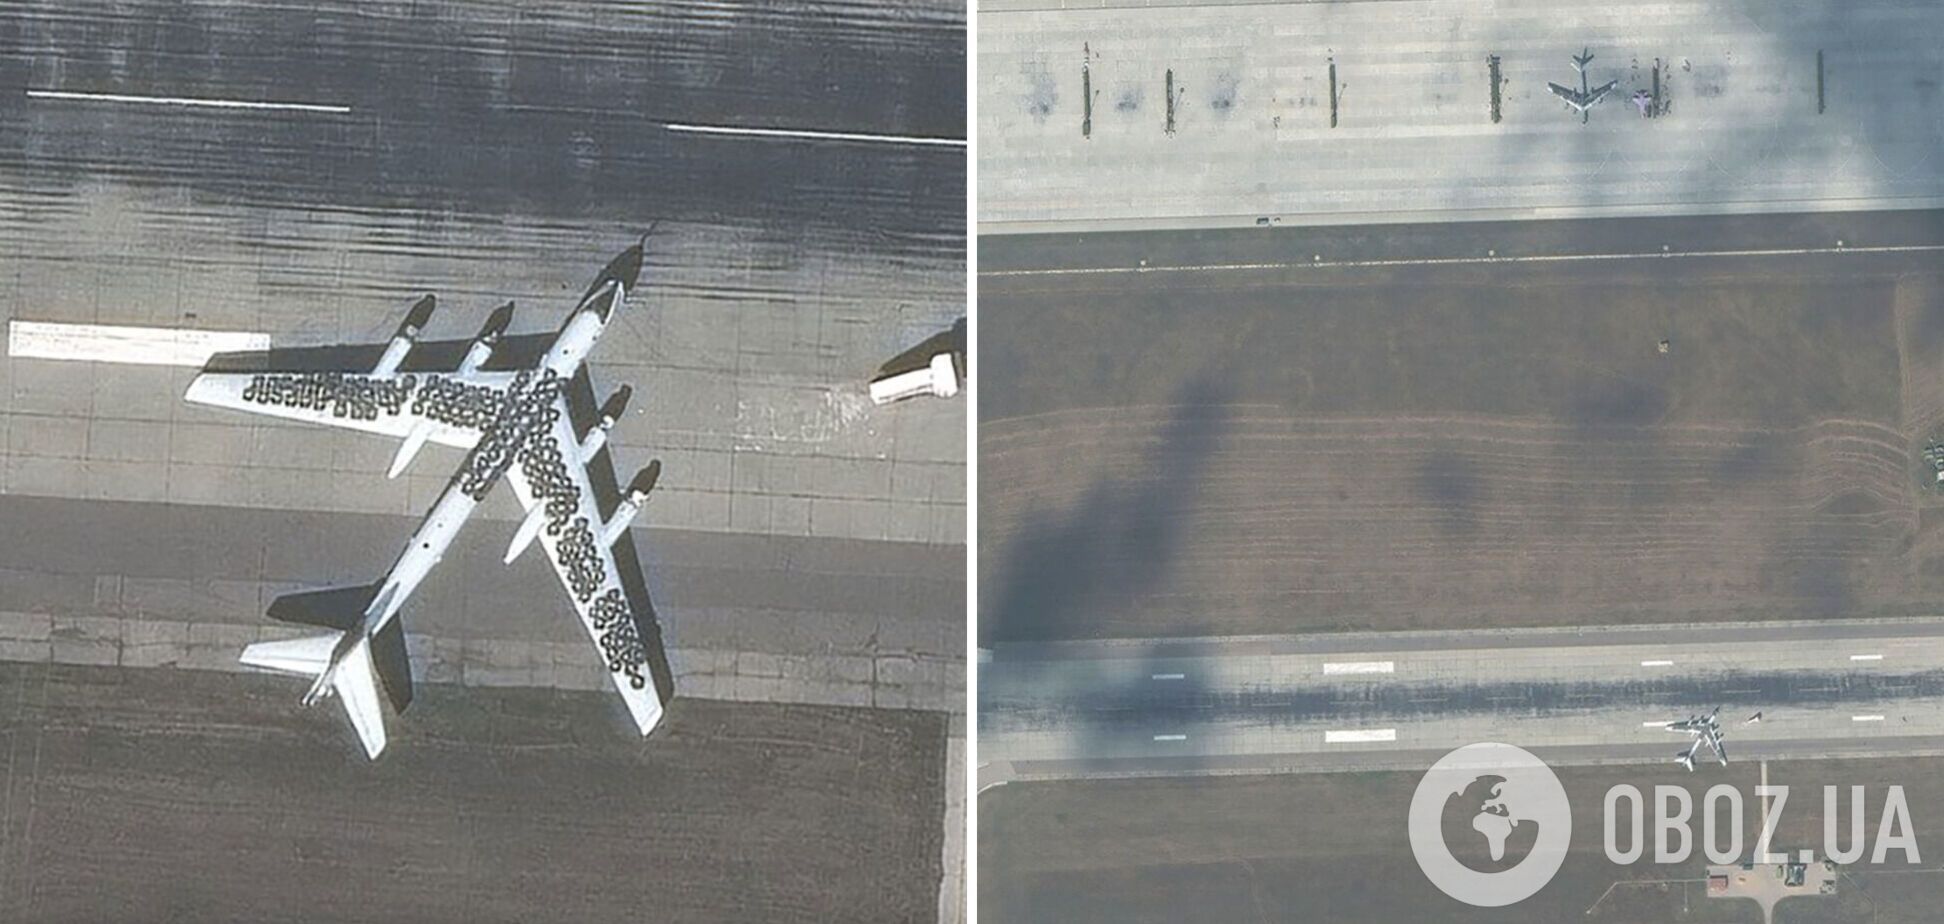 'Це виглядає безглуздо': західні експерти прокоментували 'маскування' російських літаків за допомогою шин. Фото